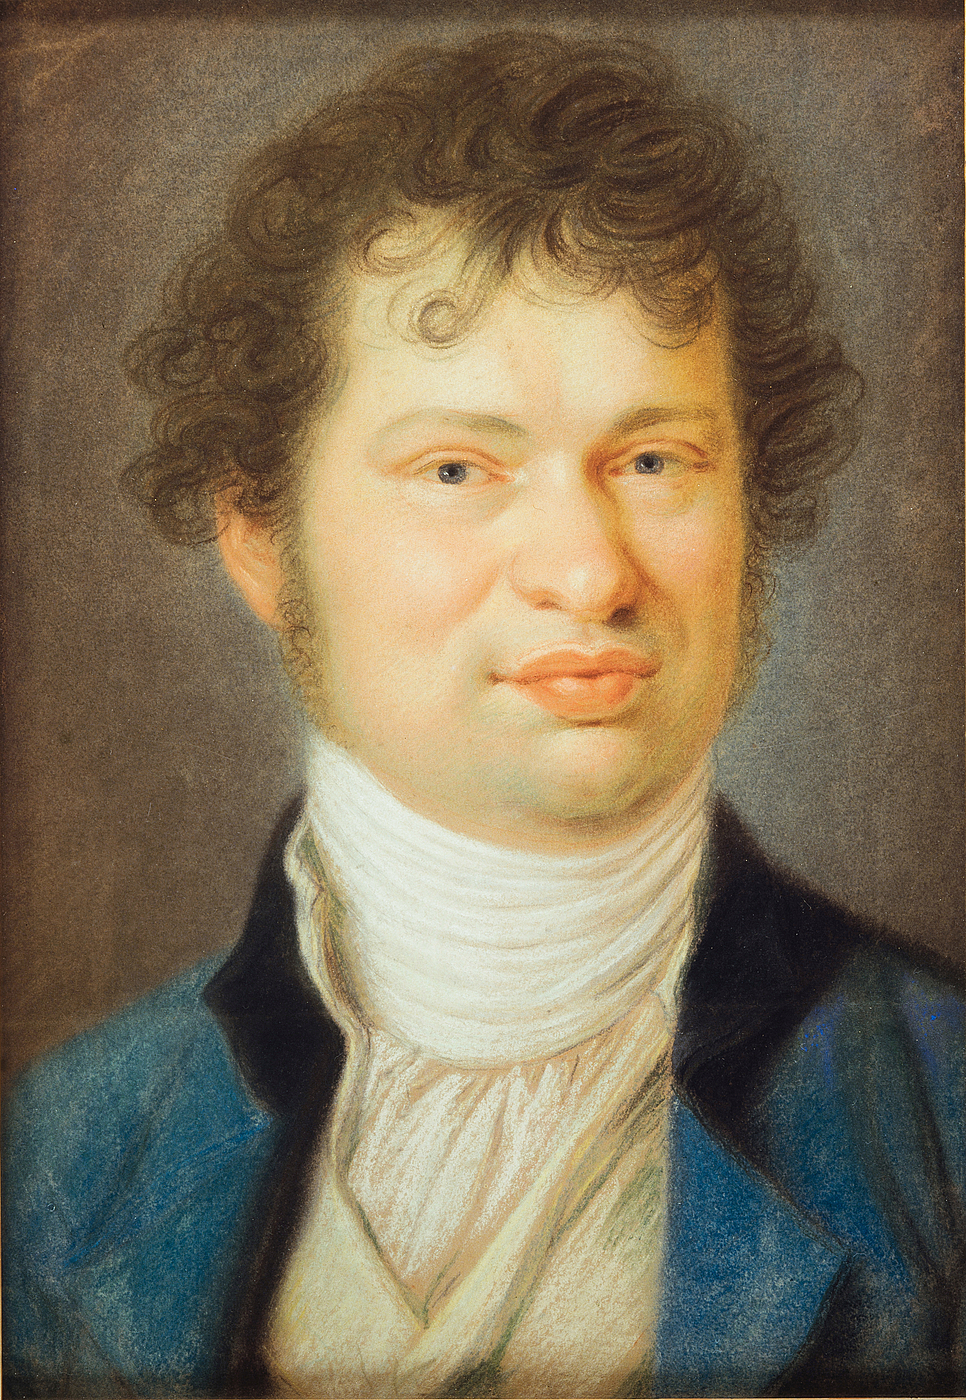 J.M. Wagner: Selvportræt, 1805